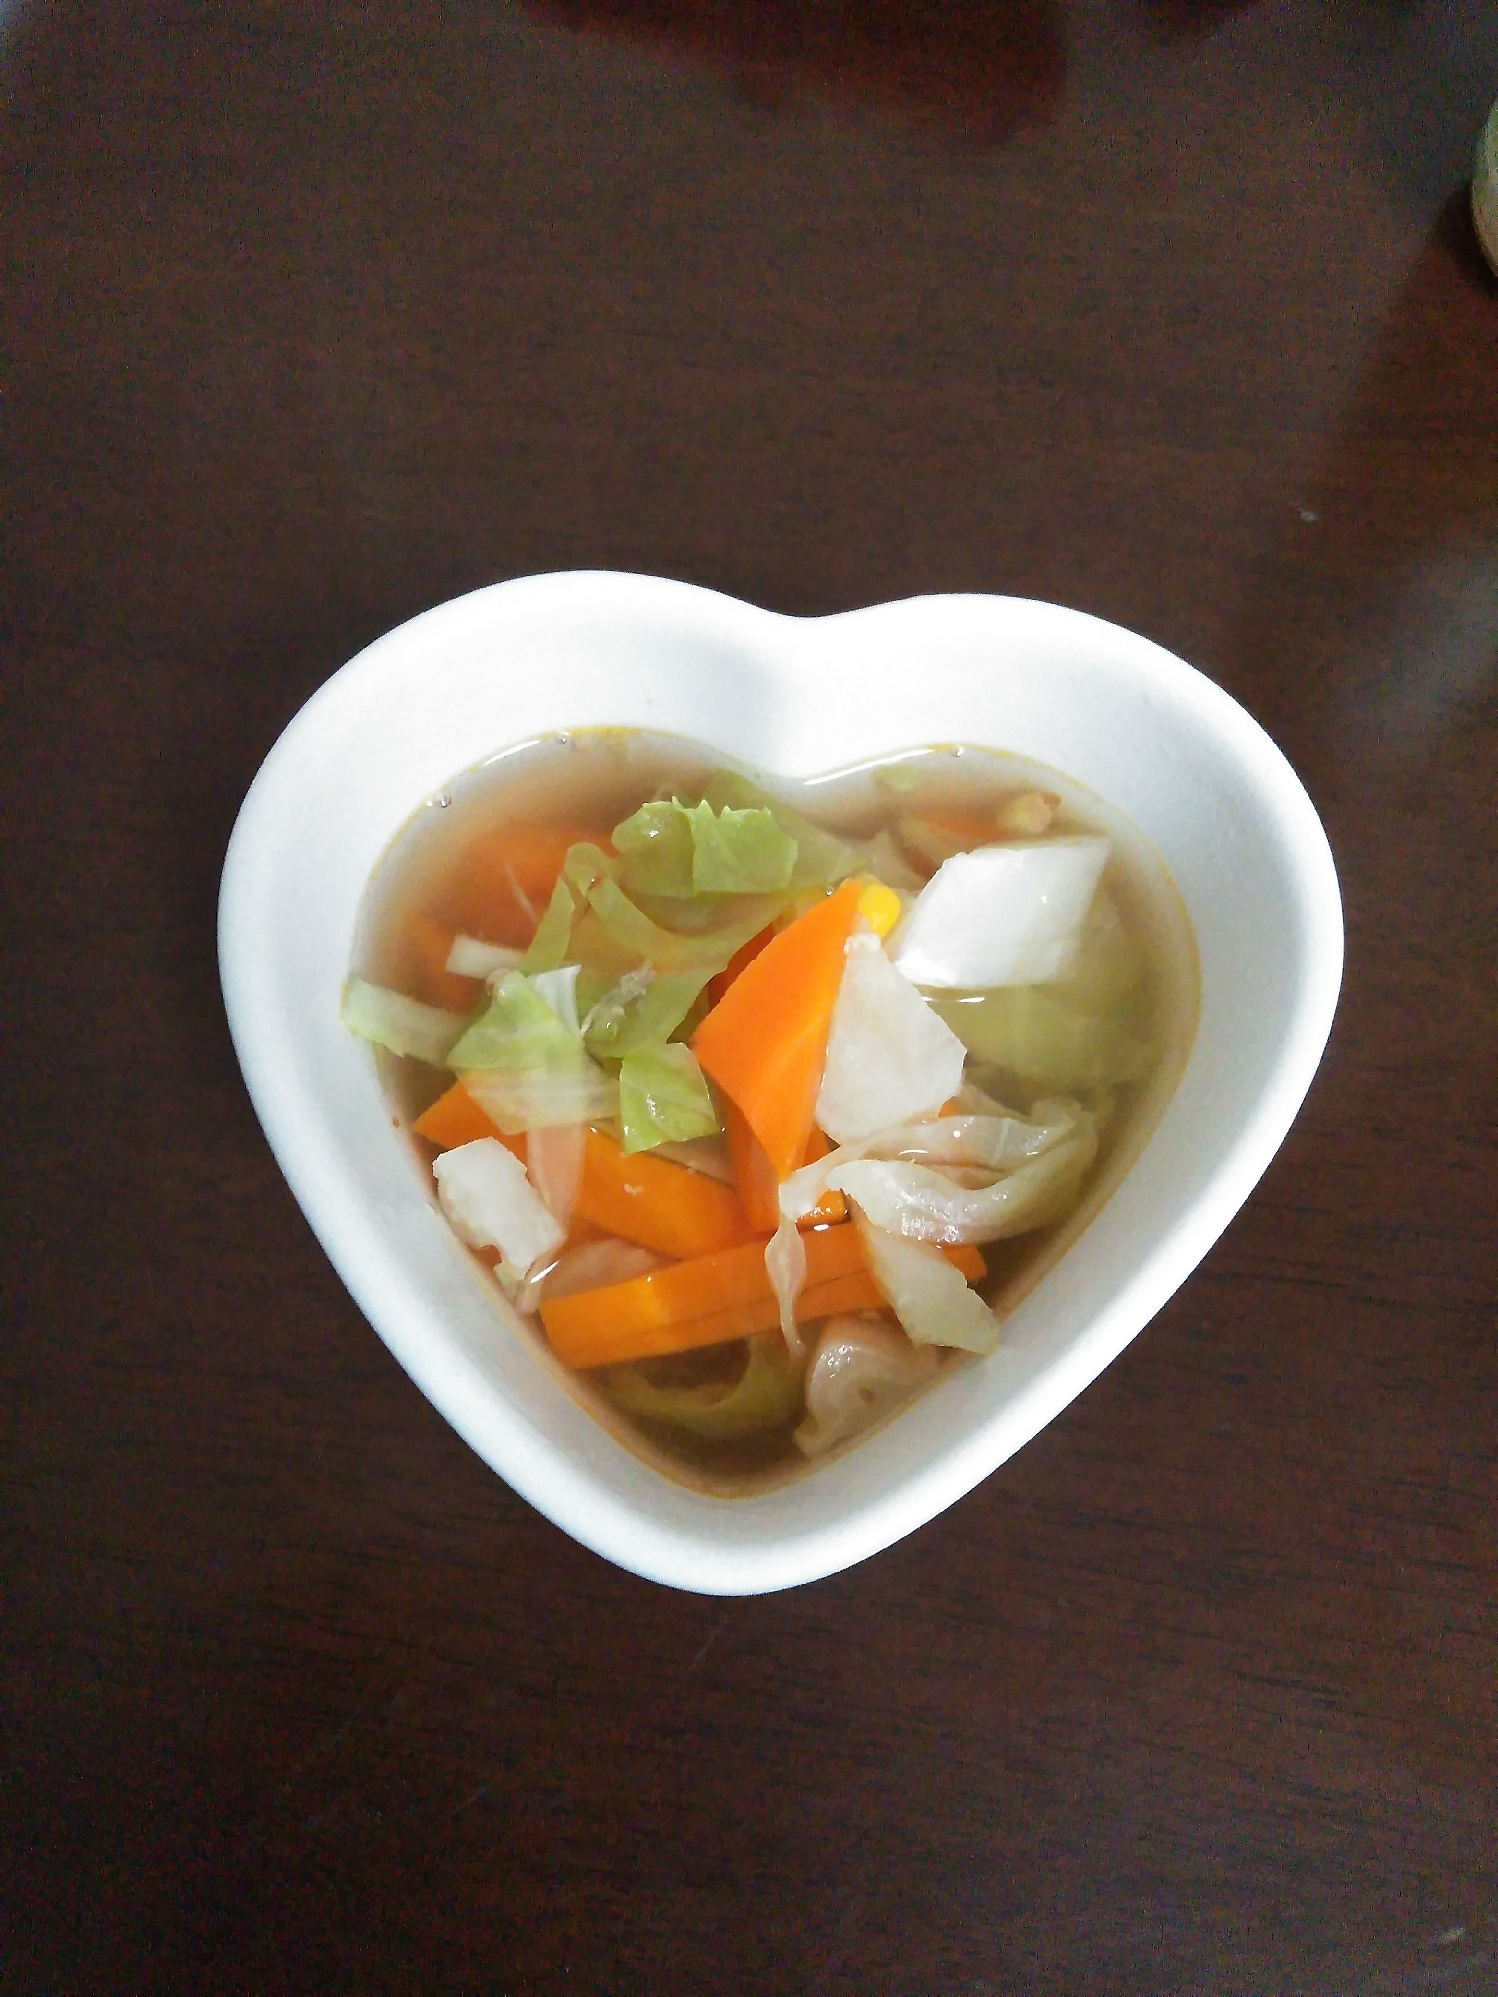 お手軽野菜スープ